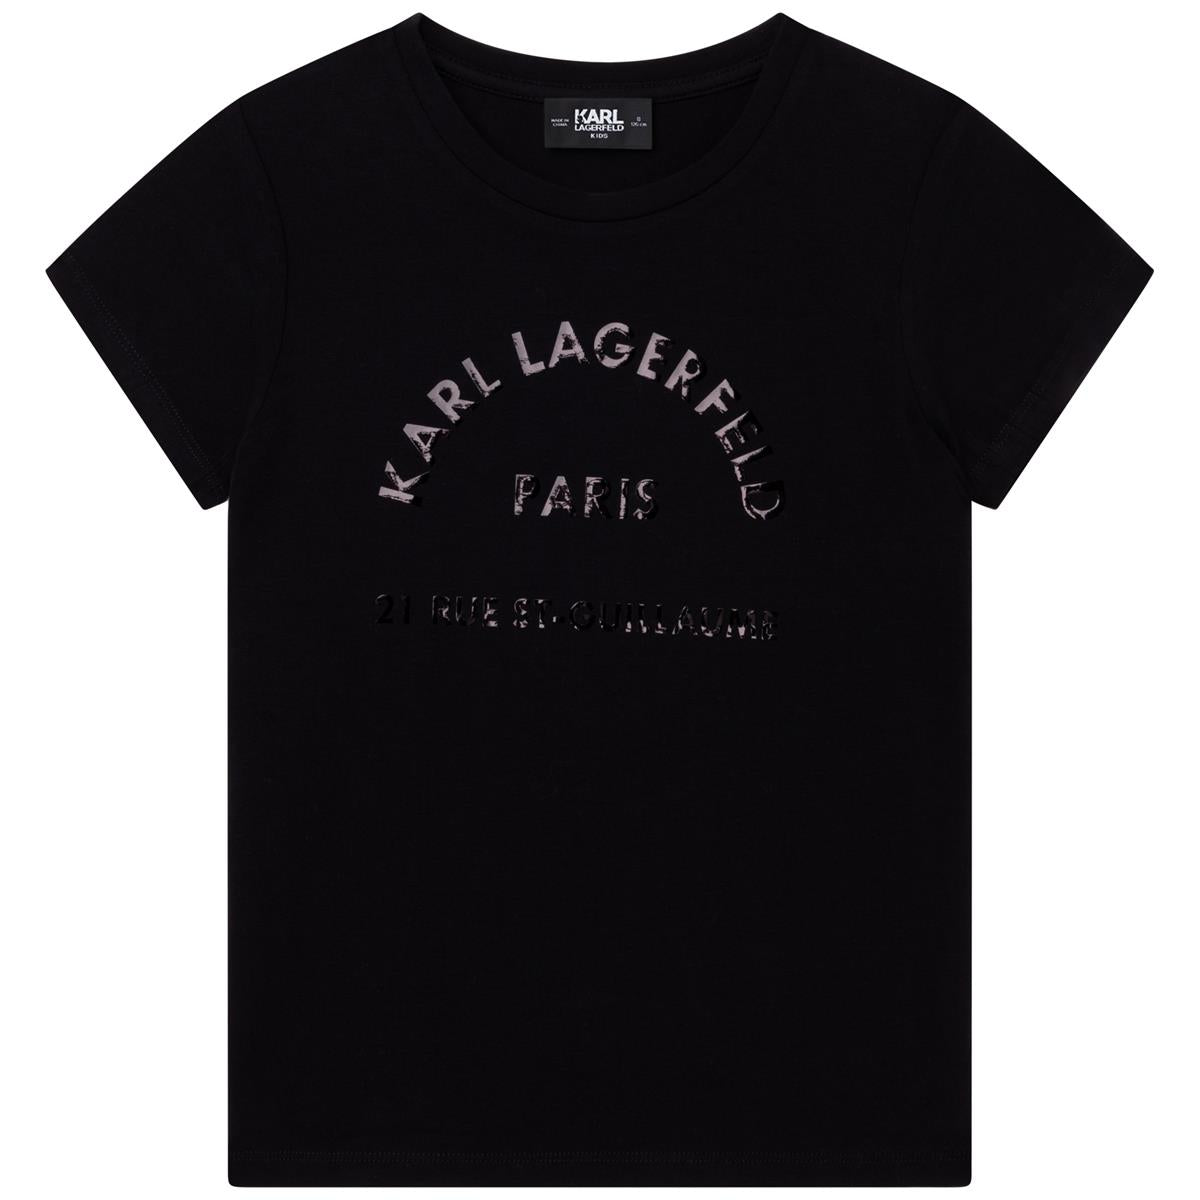 Boy & Girls Black T-Shirts